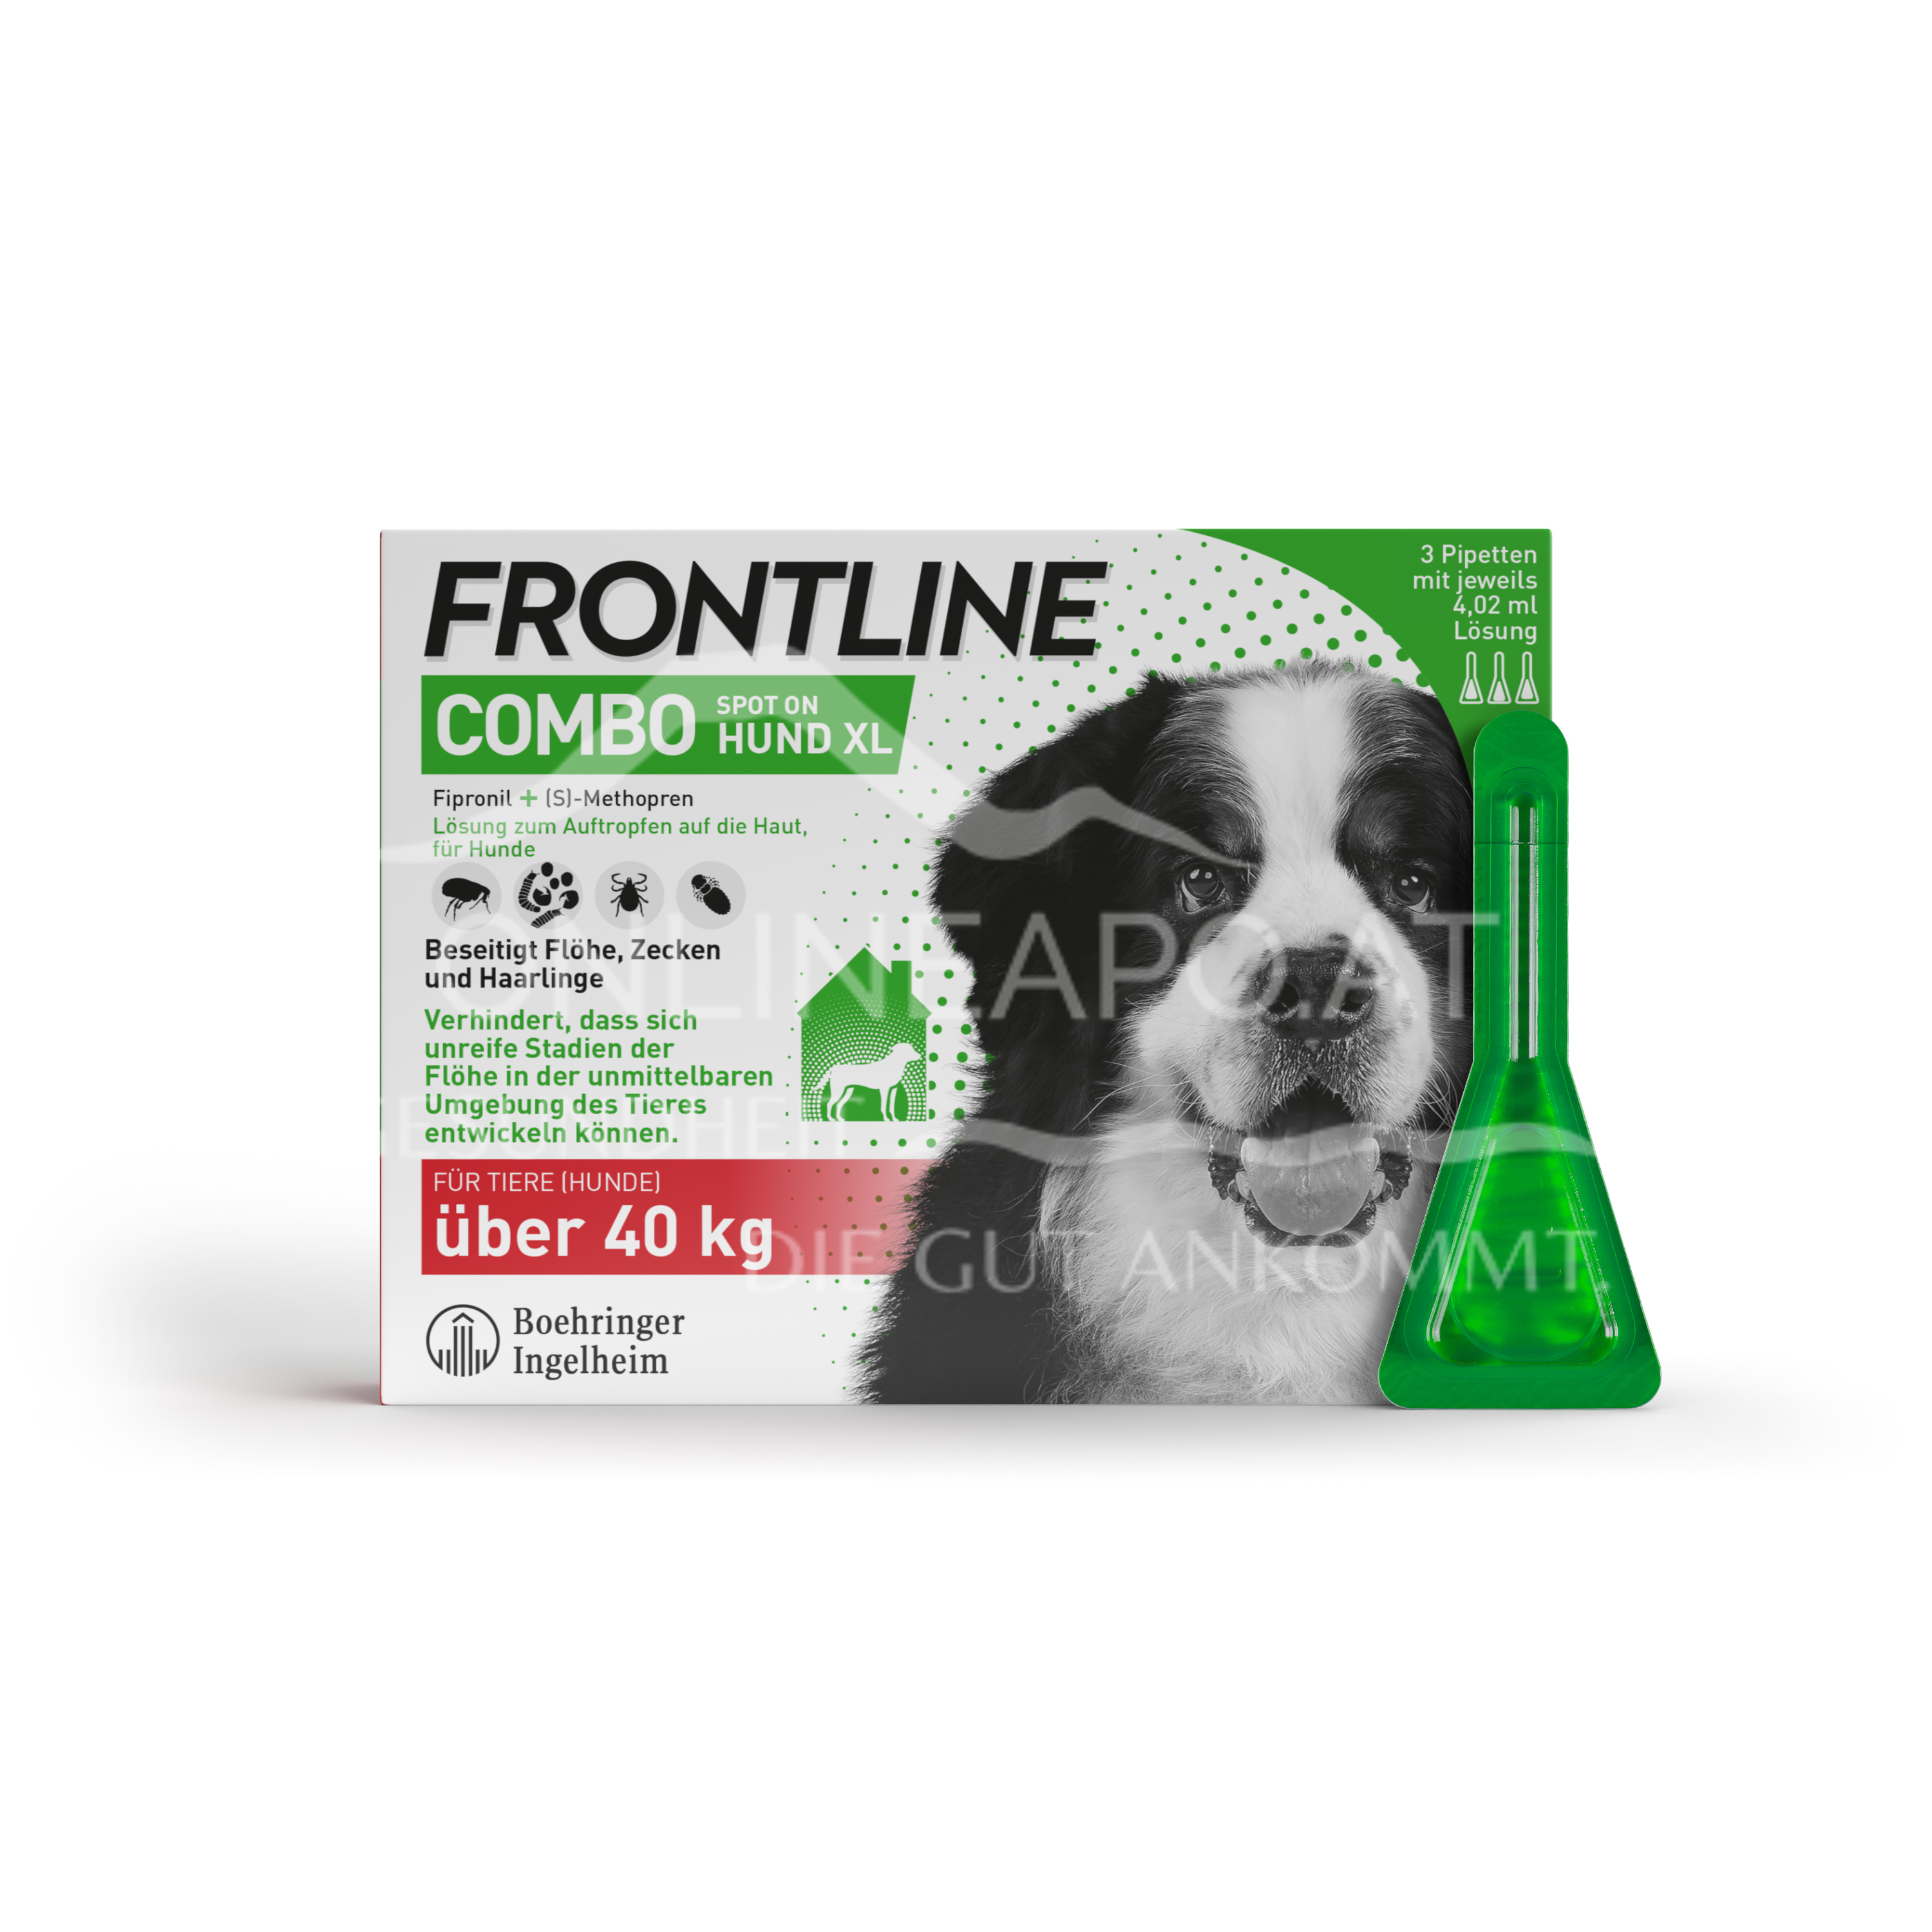 Frontline Combo Spot on Hund XL Lösung zum Auftropfen auf die Haut über 40 kg